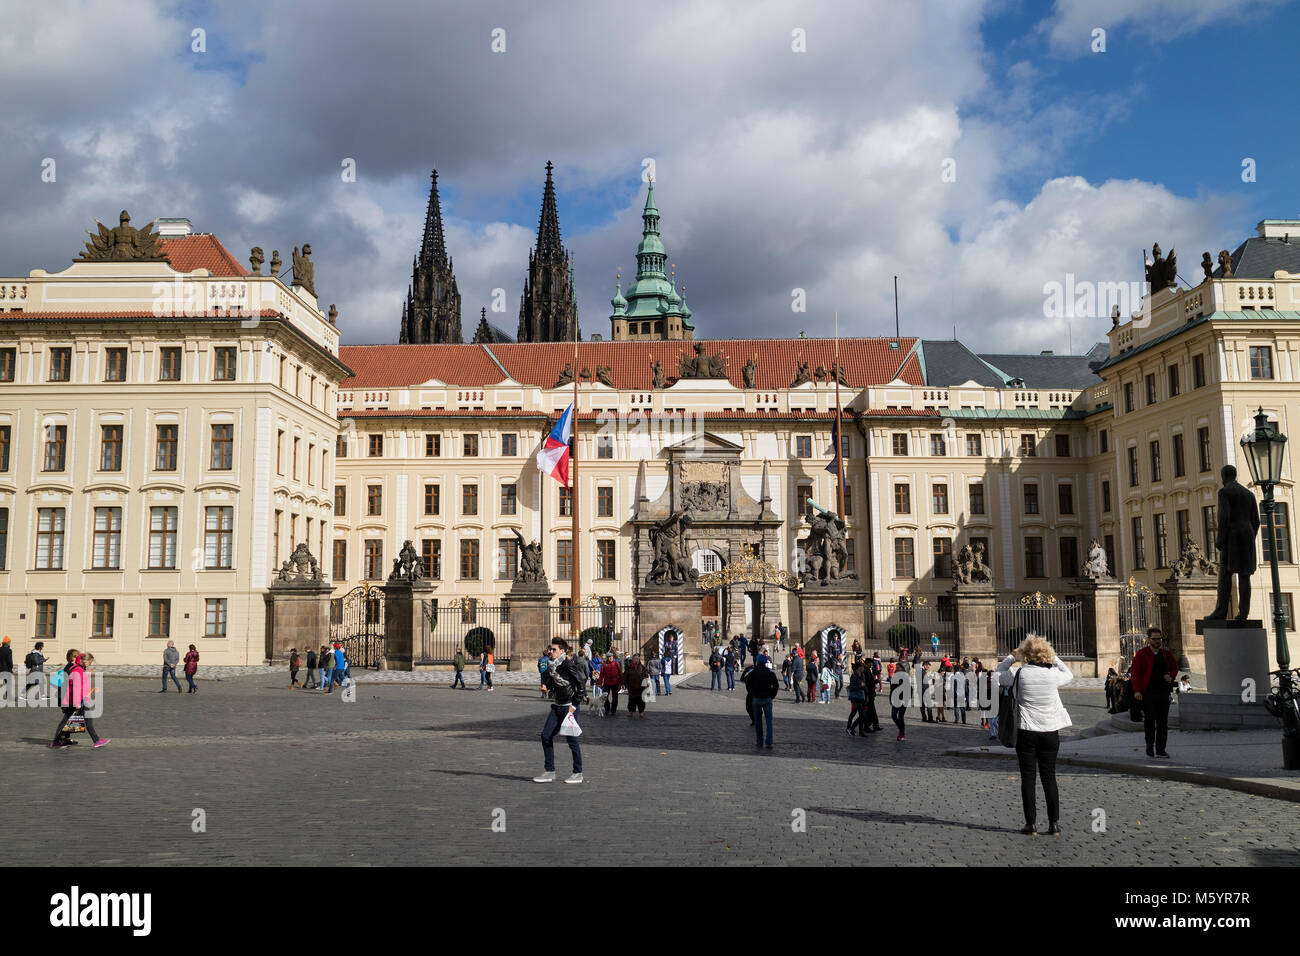 Prague, République tchèque - octobre, 6, 2017 : porte d'entrée du château de Prague vu de Hradcany Square avec trois tours à l'arrière-plan Banque D'Images